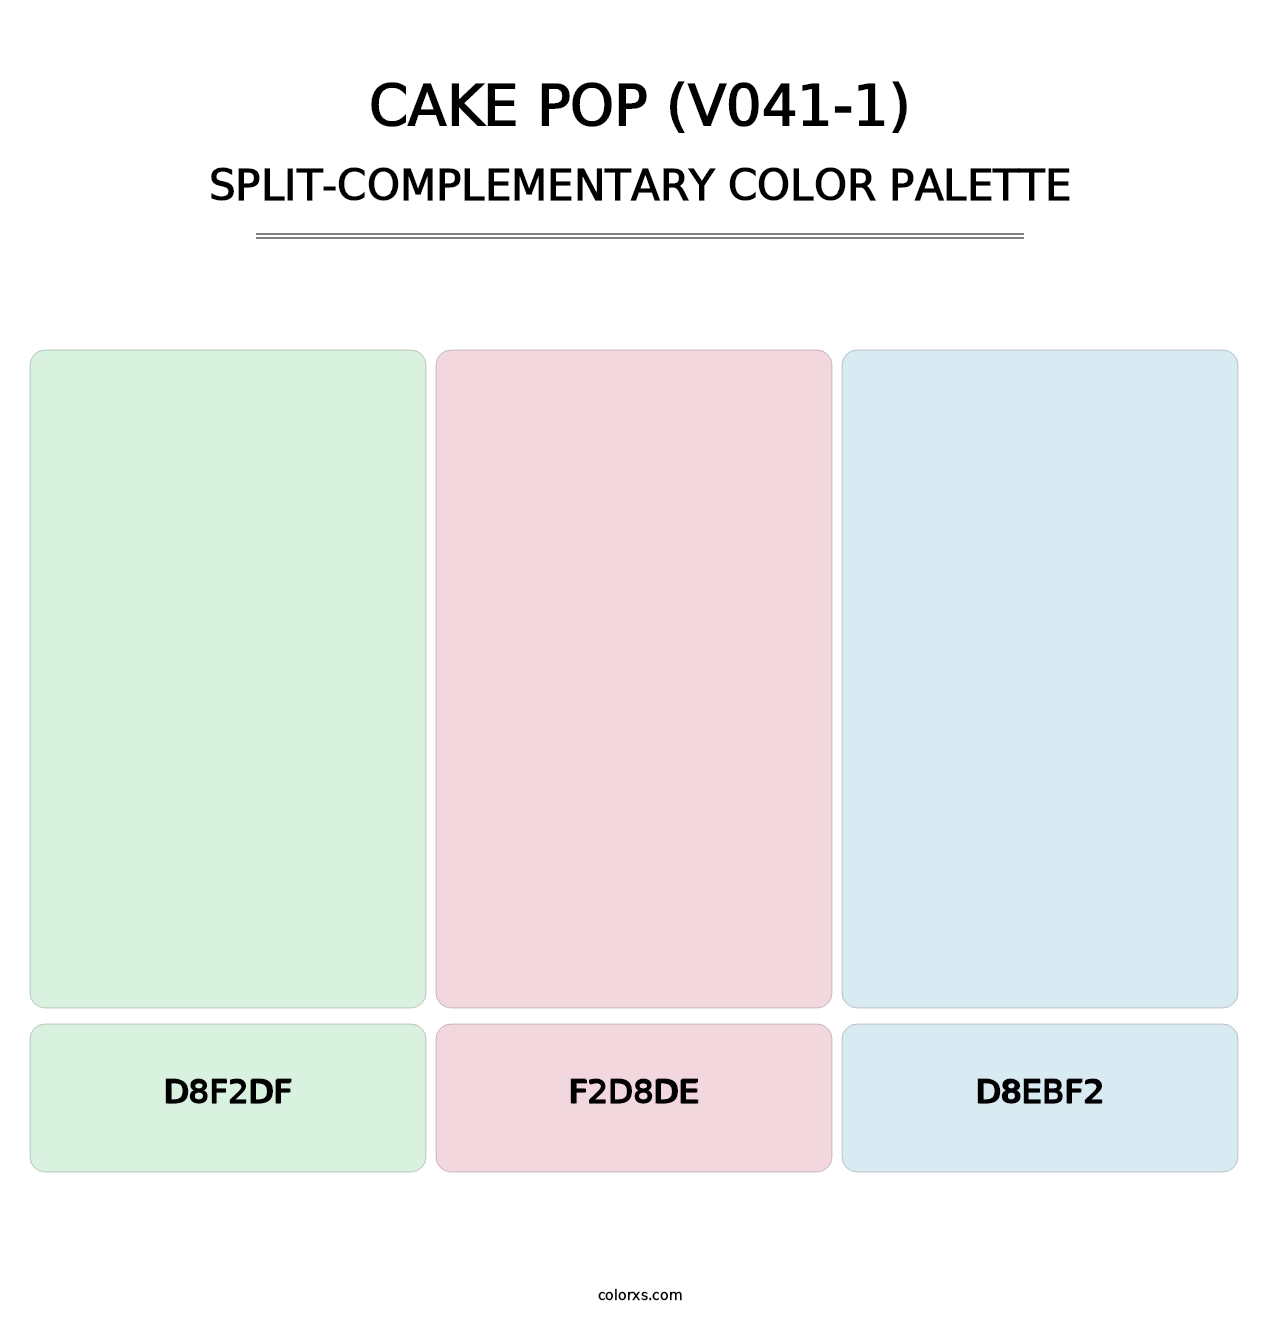 Cake Pop (V041-1) - Split-Complementary Color Palette